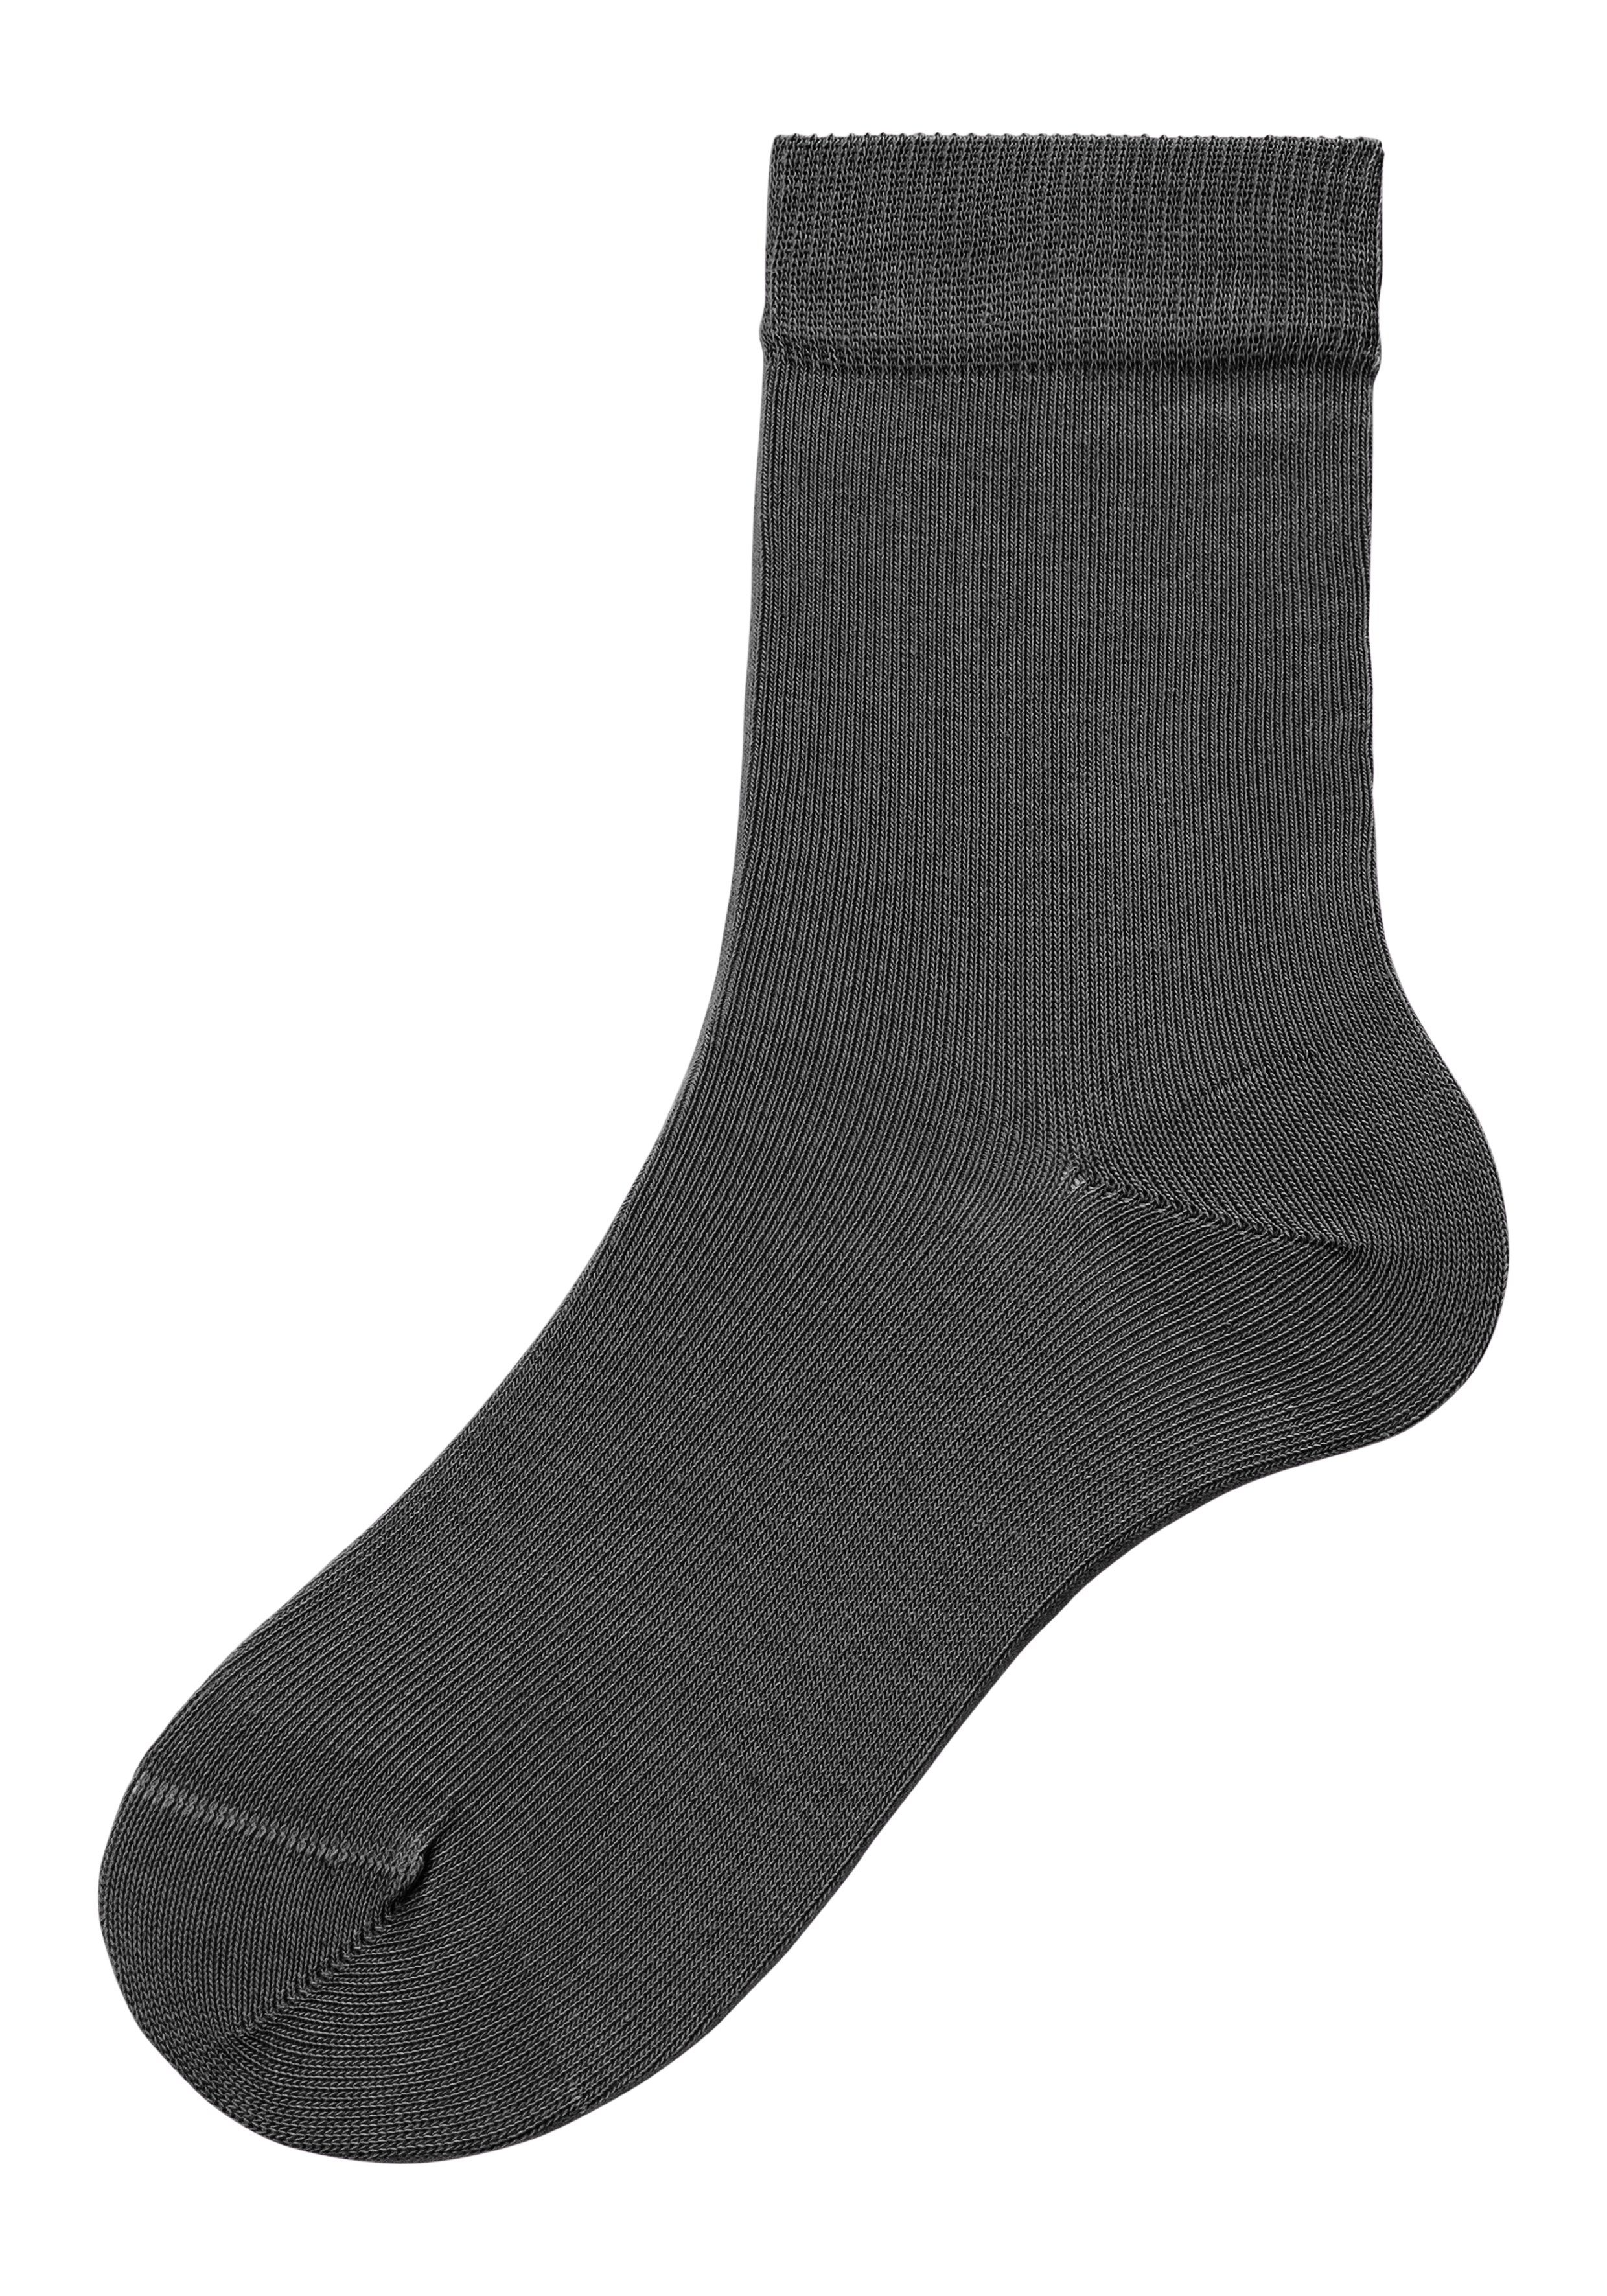 4-Paar) (Set, in Socken grau-schwarz unterschiedlichen 4x H.I.S Farbzusammenstellungen